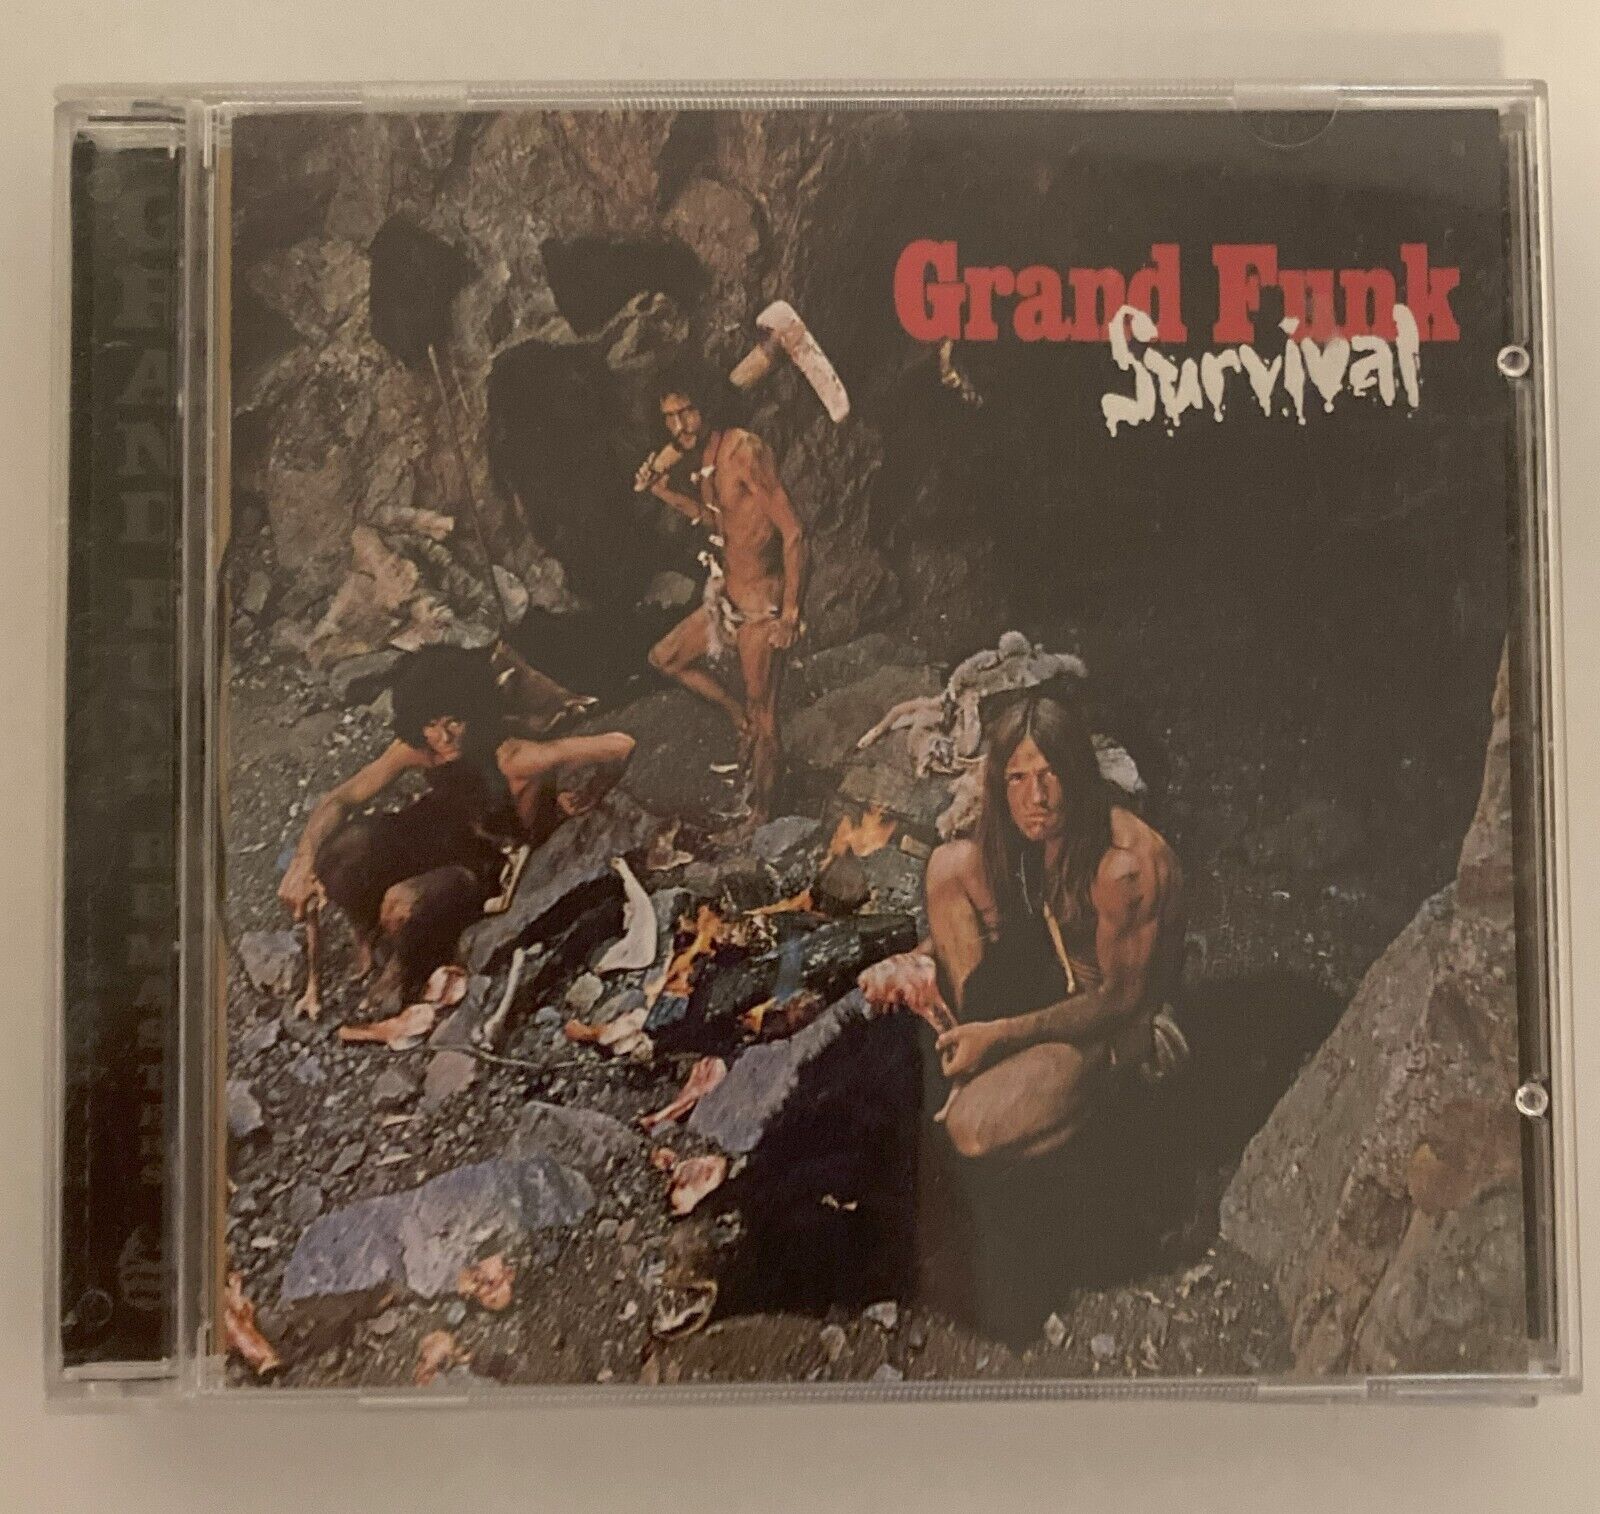 Grand Funk Railroad ~ Survival (1971) CD 2002 Capitol Records EXCELLENT CONDITIO